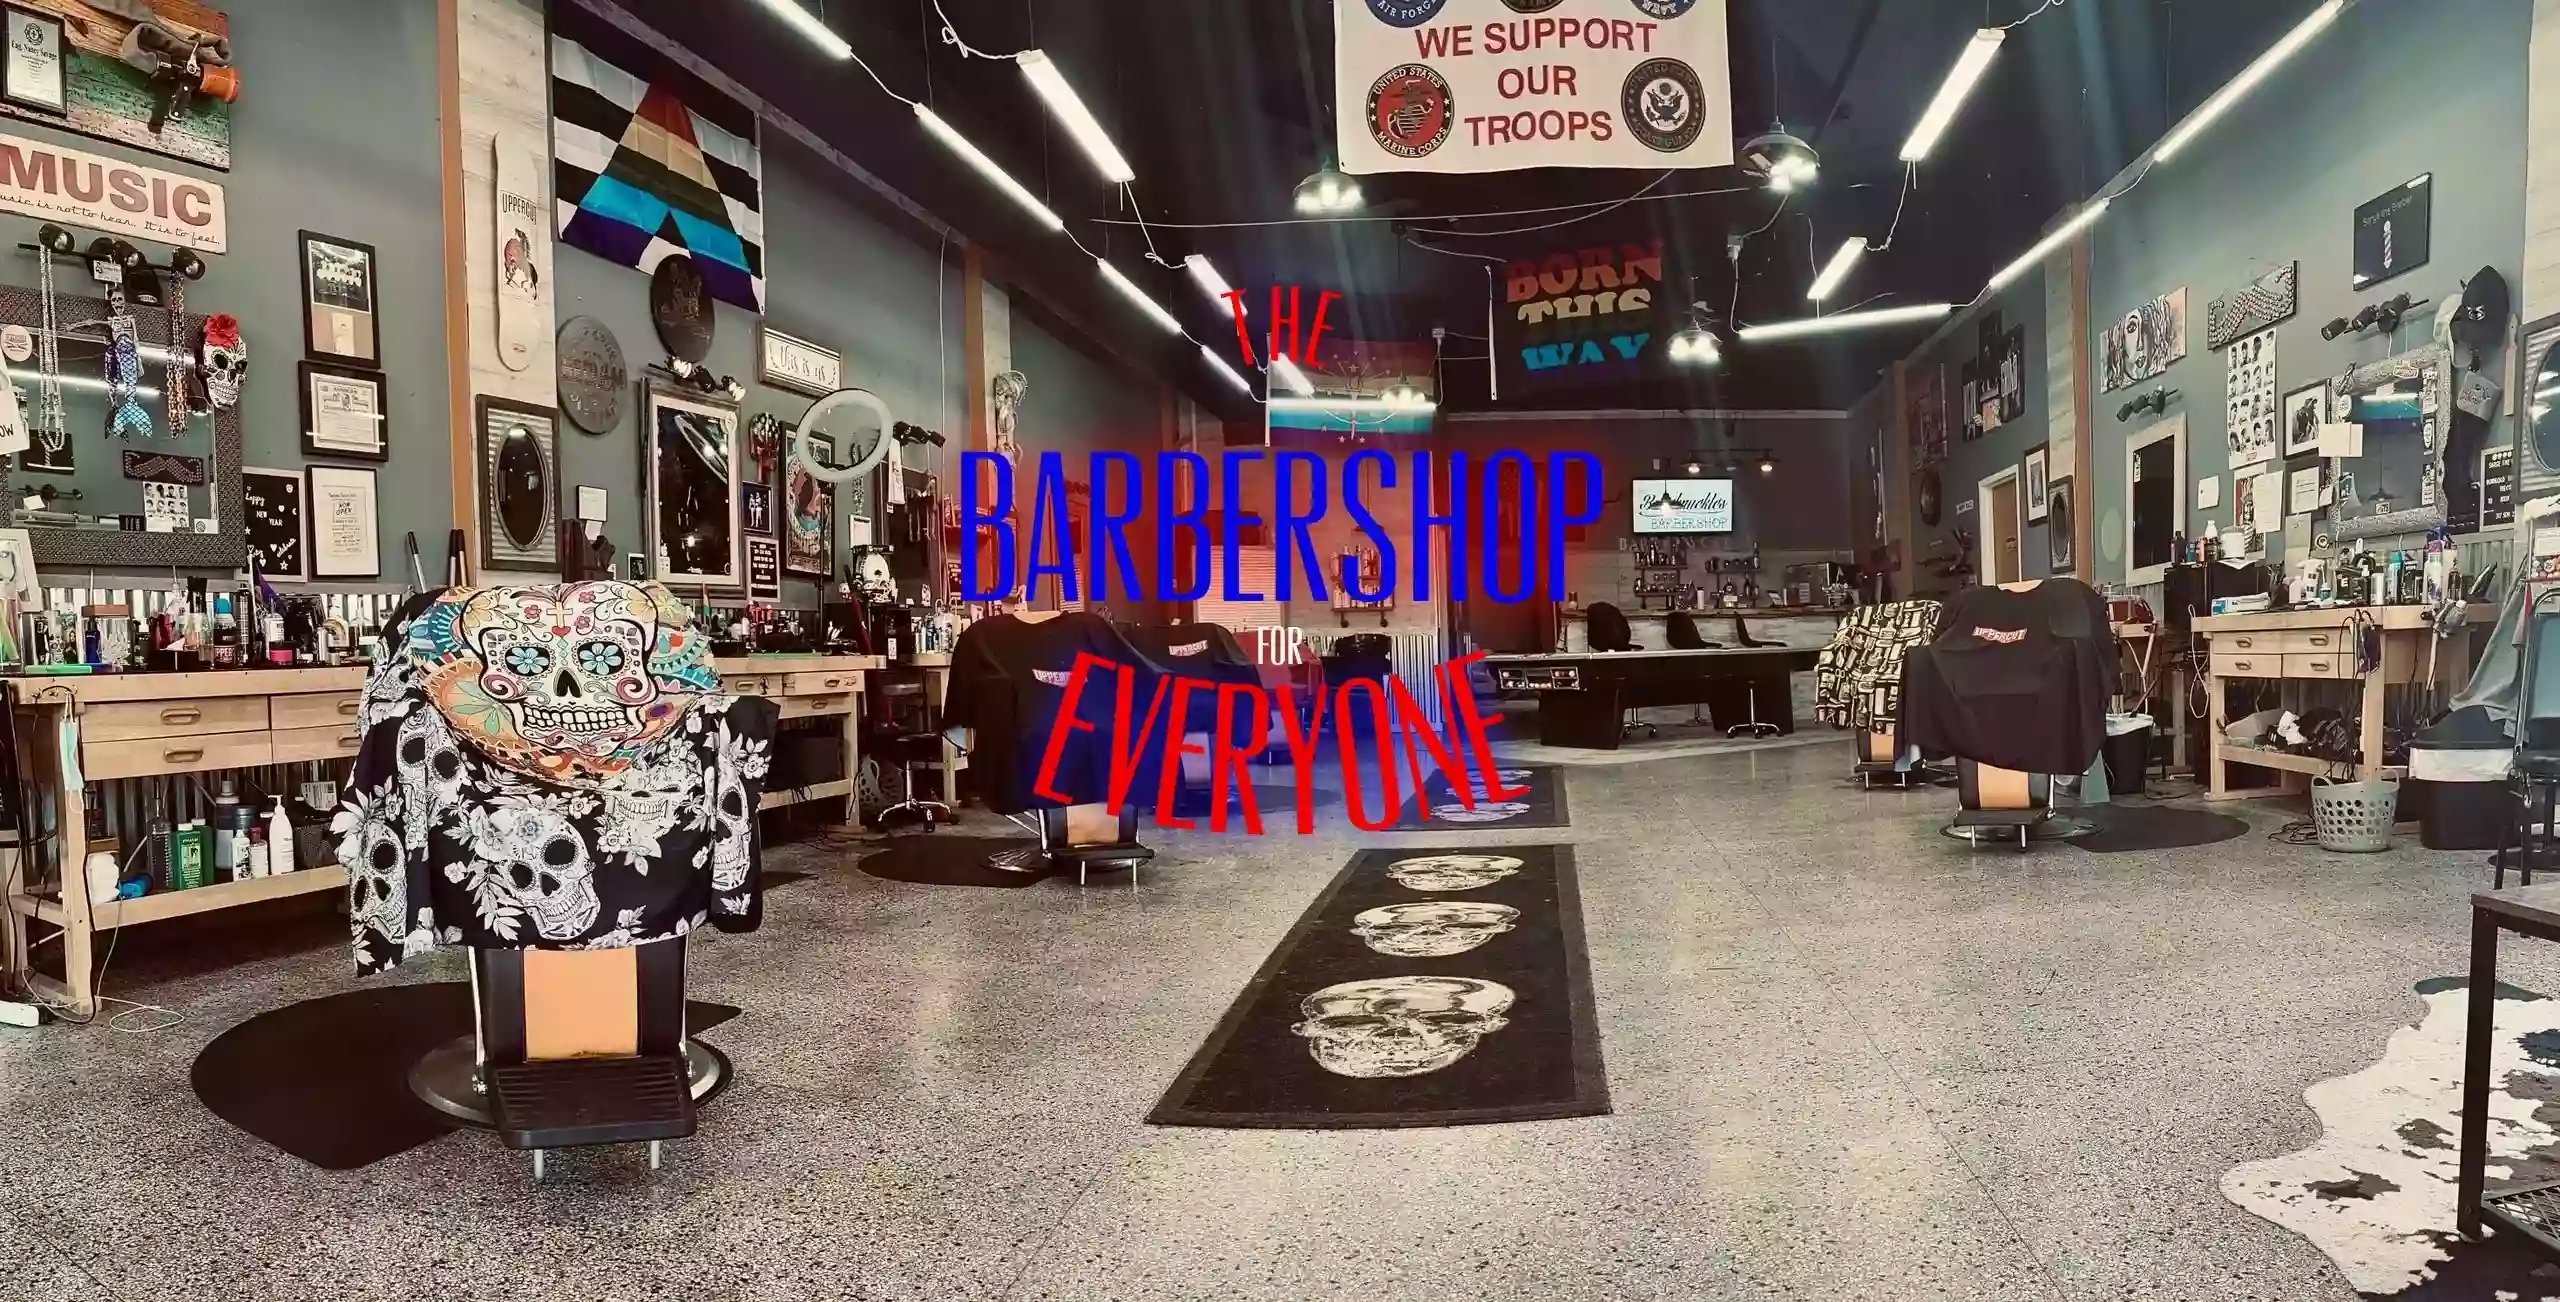 The Bareknuckles Barbershop